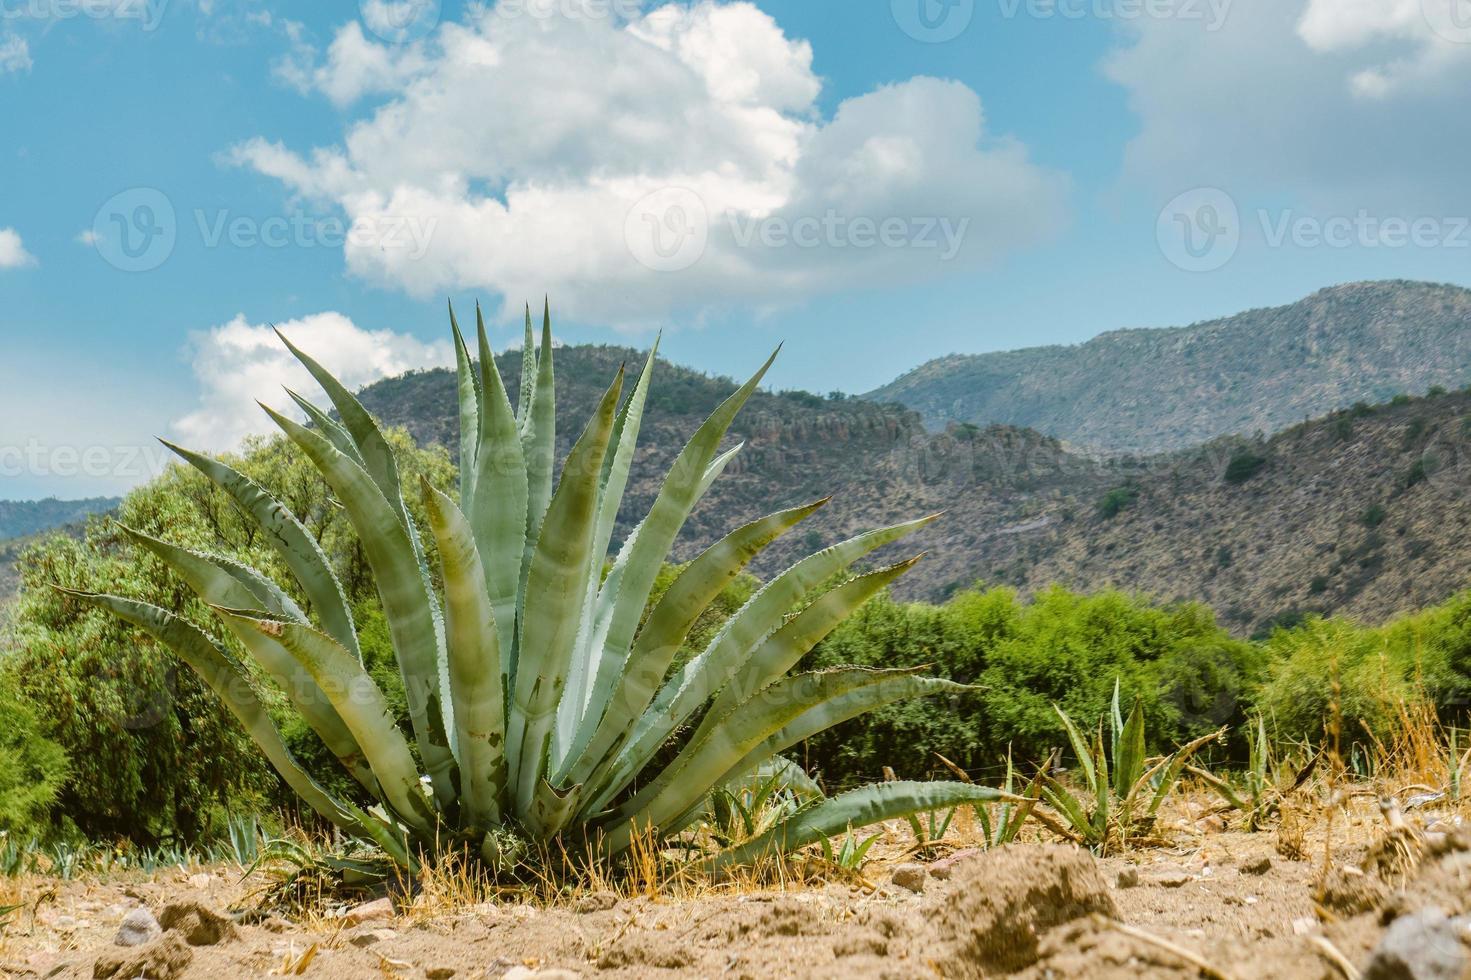 cactus en mexico para fondo de pantalla o fondo foto